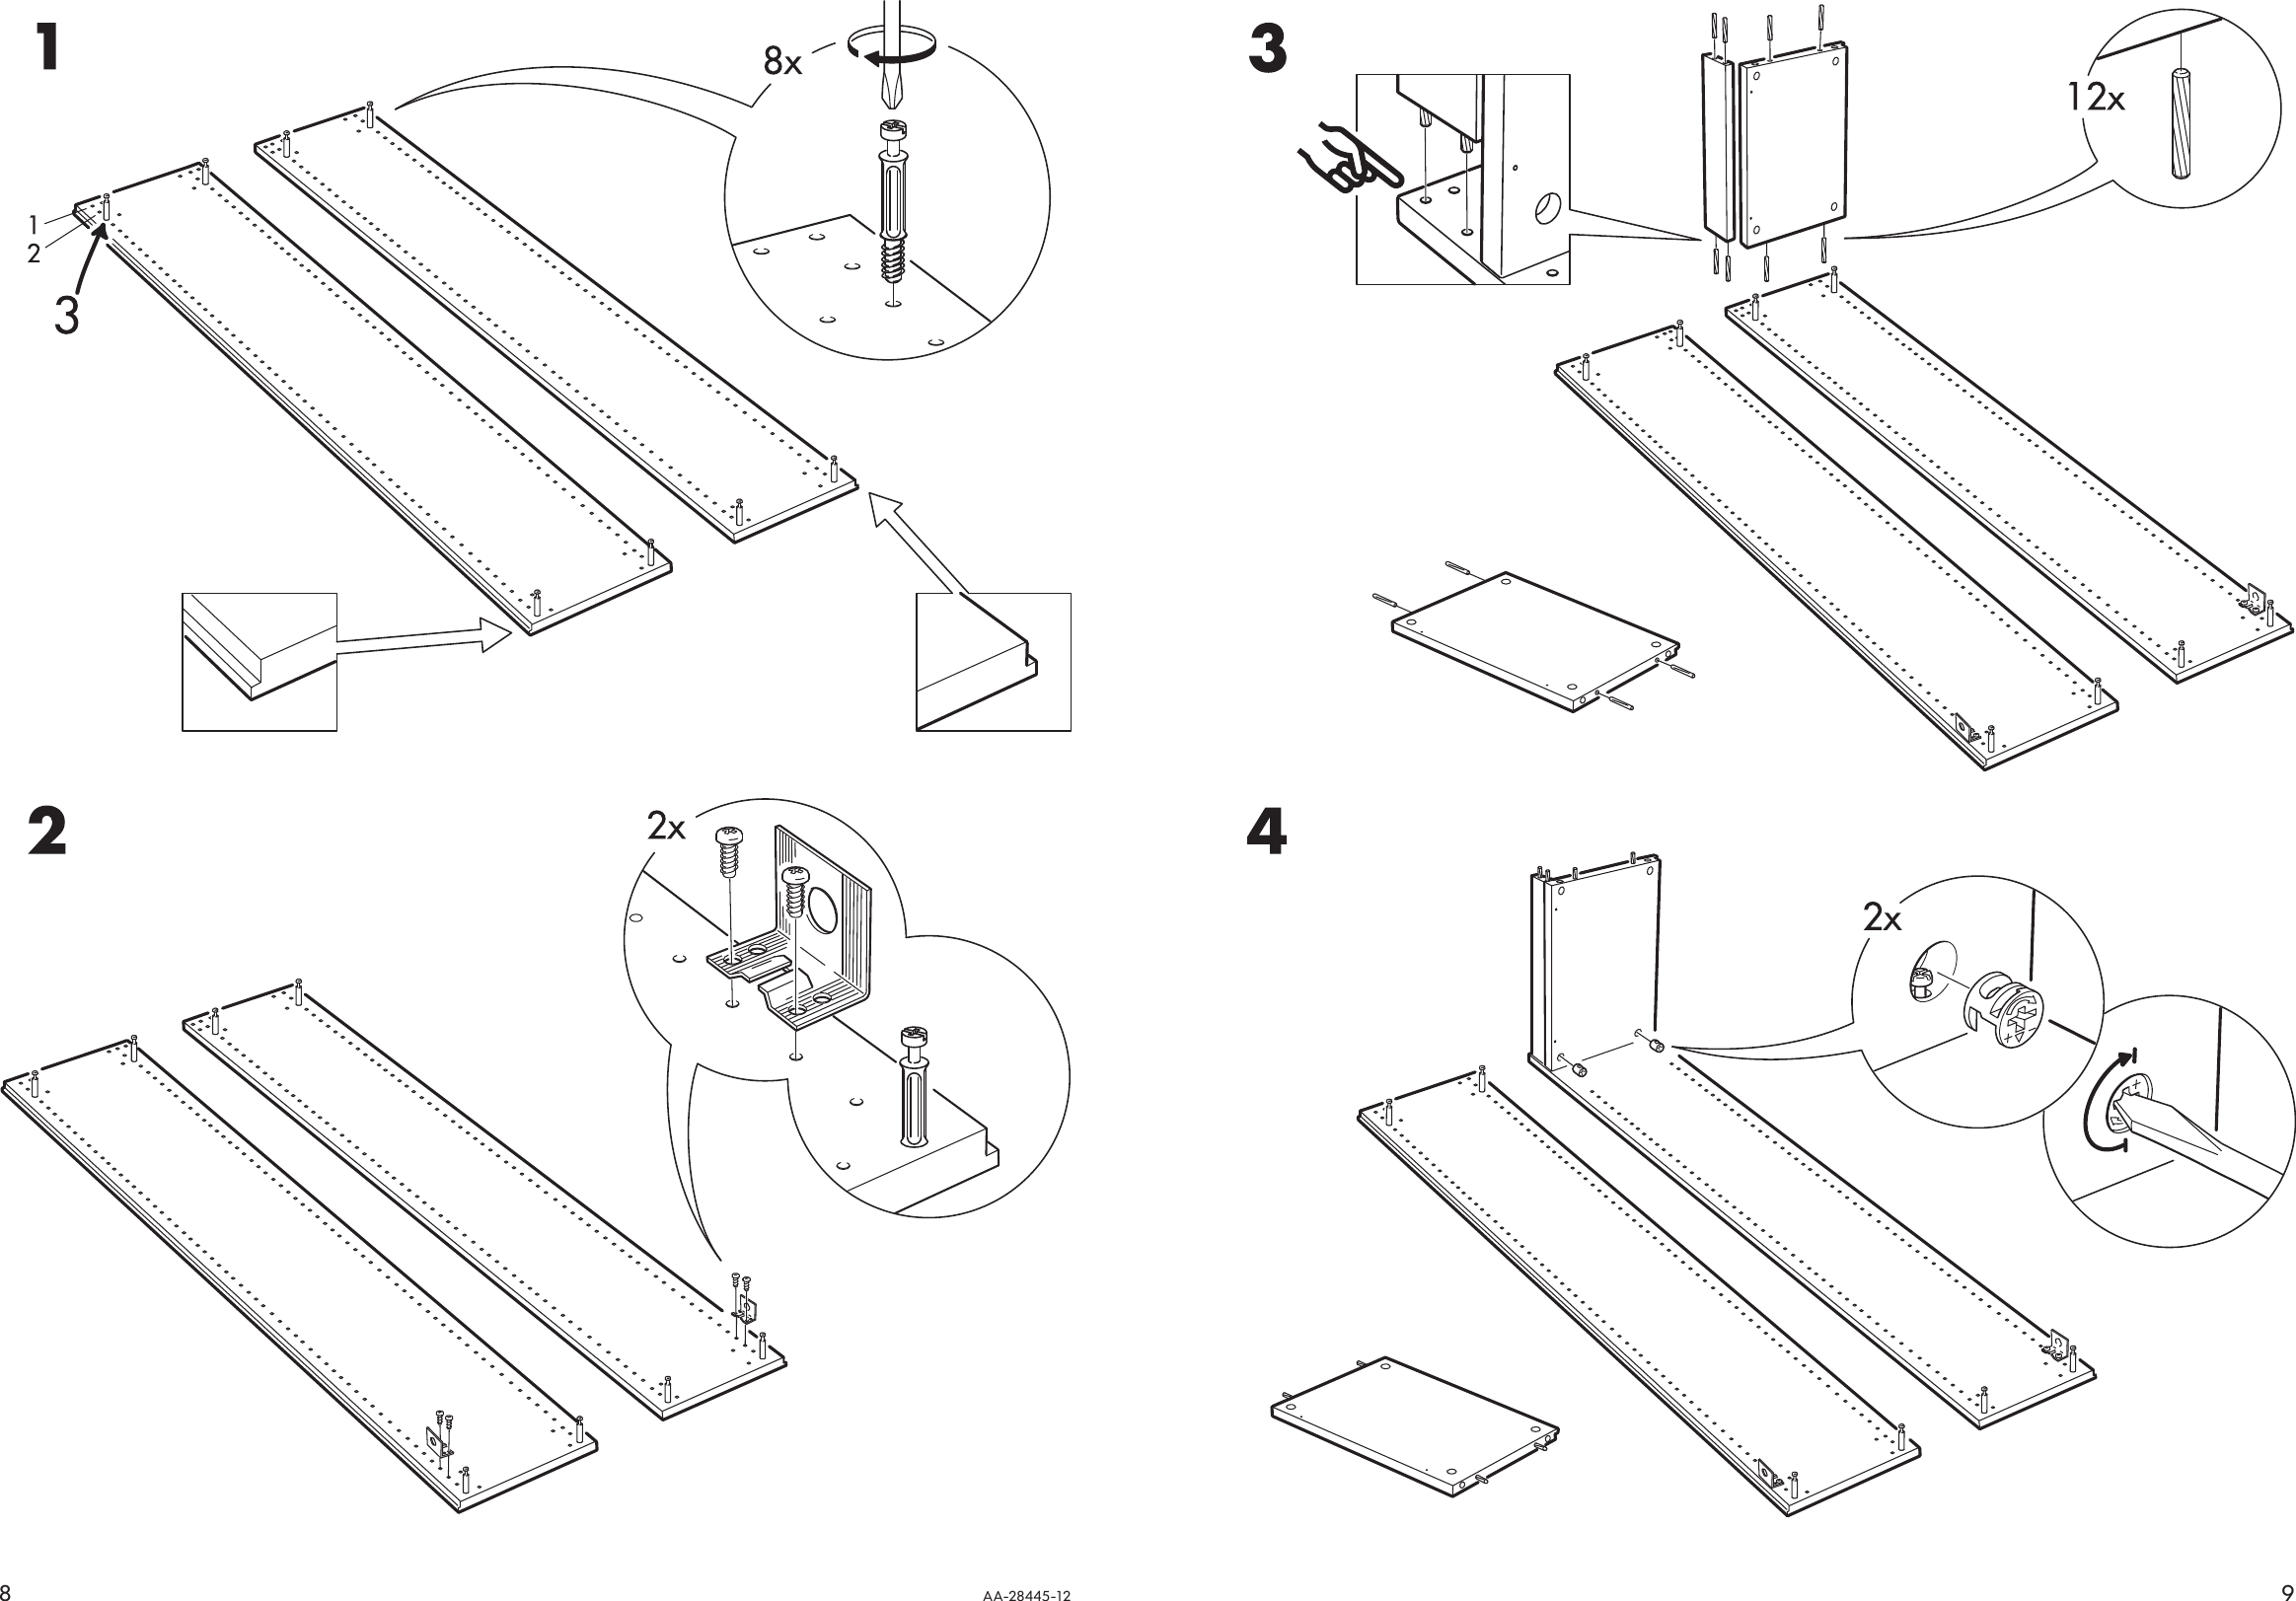 Ikea Pax Wardrobe Assembly Instructions Pdf